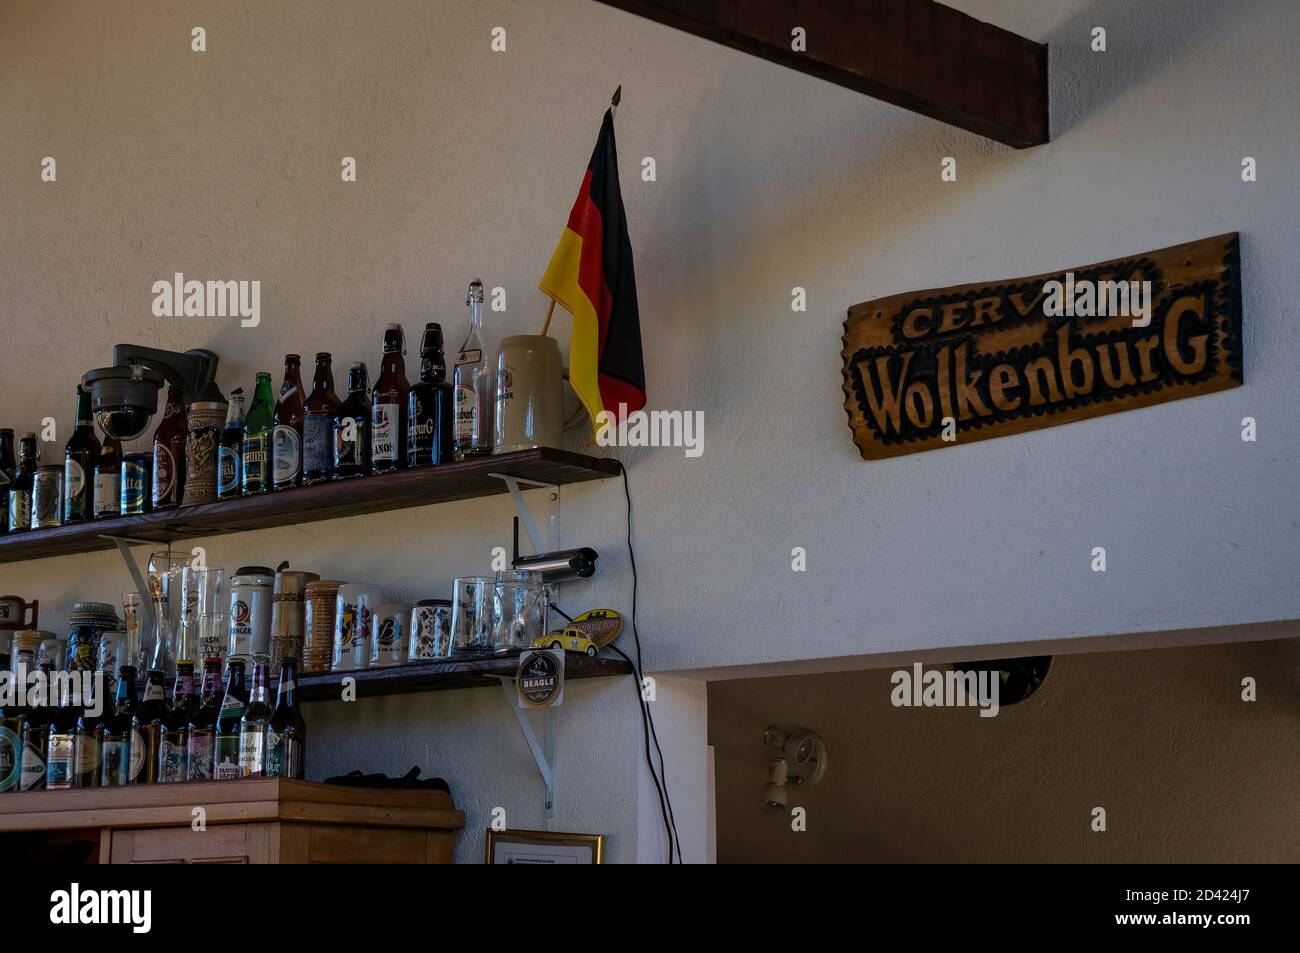 Le mur décoré de la salle à manger de la brasserie Wolkenburg avec quelques bouteilles de bière sur les étagères avec le drapeau allemand et une assiette en bois. Banque D'Images